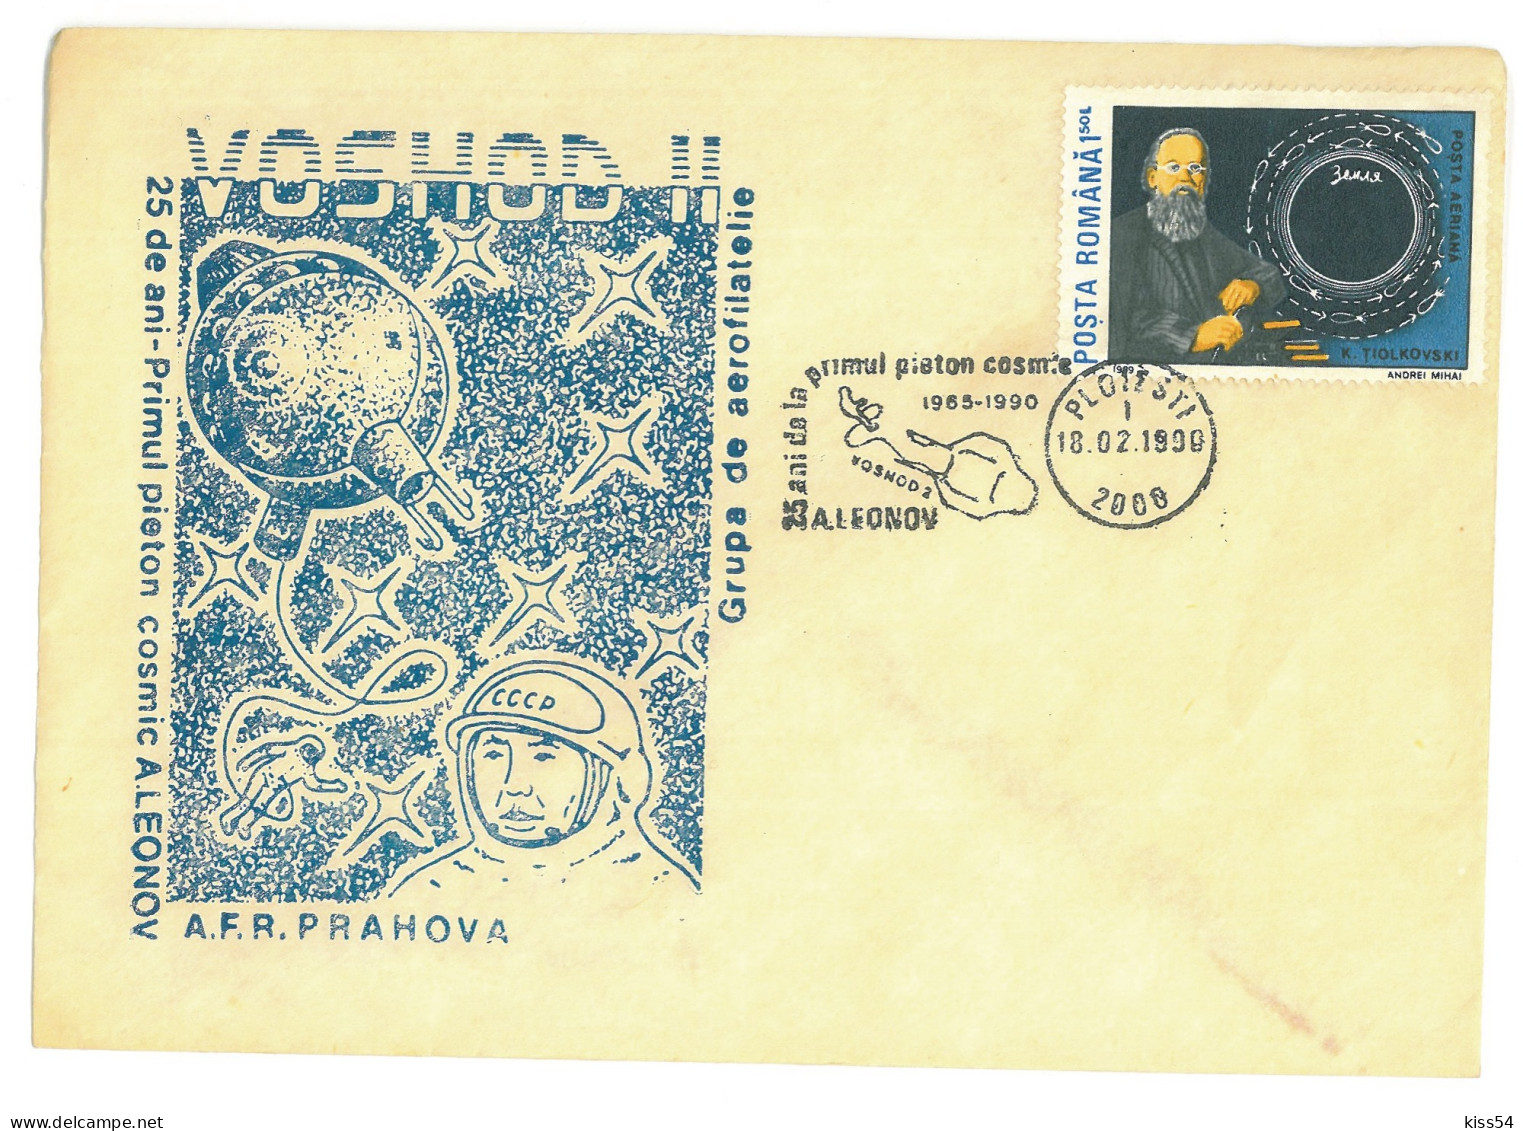 COV 97 - 3069 Ploiesti, Cosmos, VOSHOD II, Romania - Cover Stationery - Used - 1990 - Cartes-maximum (CM)